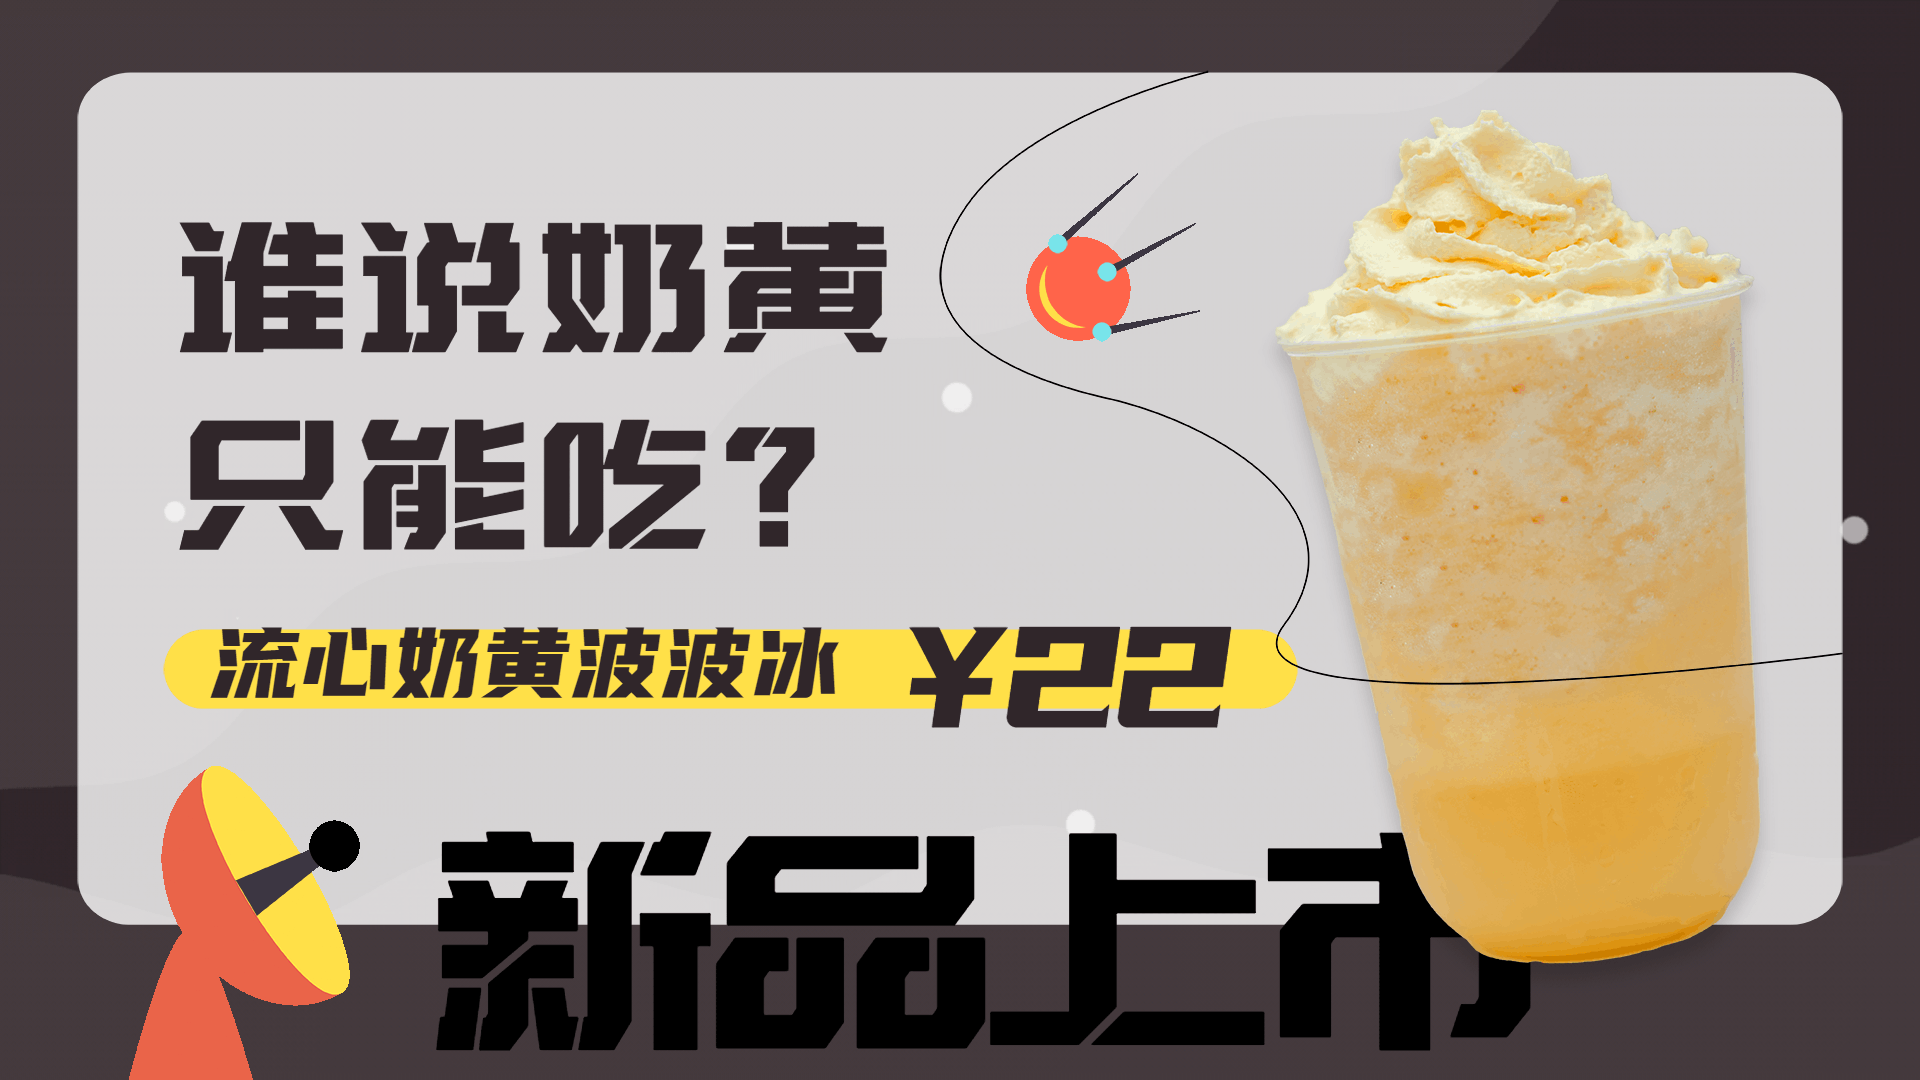 奶茶饮品新品上市促销活动电视屏横屏动图预览效果